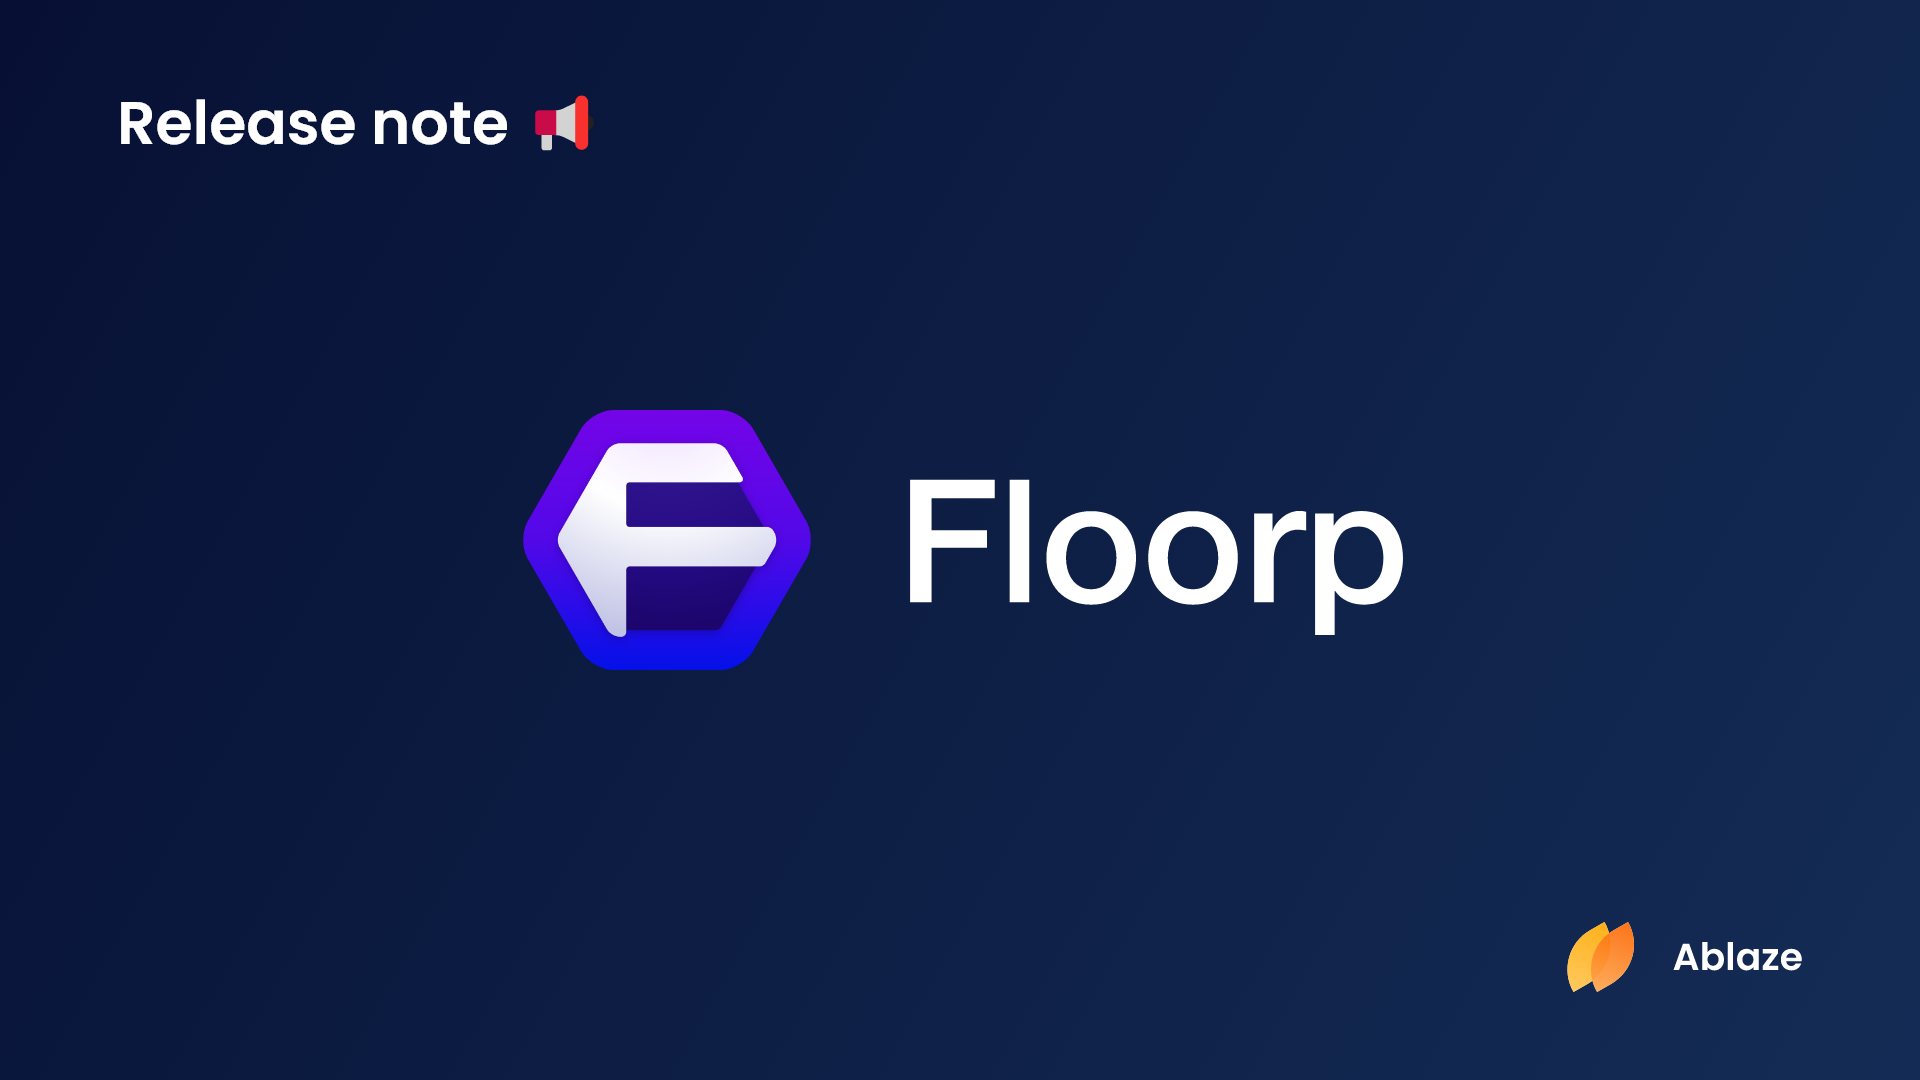 Floorp ブラウザー | バージョン 10.6.0 リリースノート